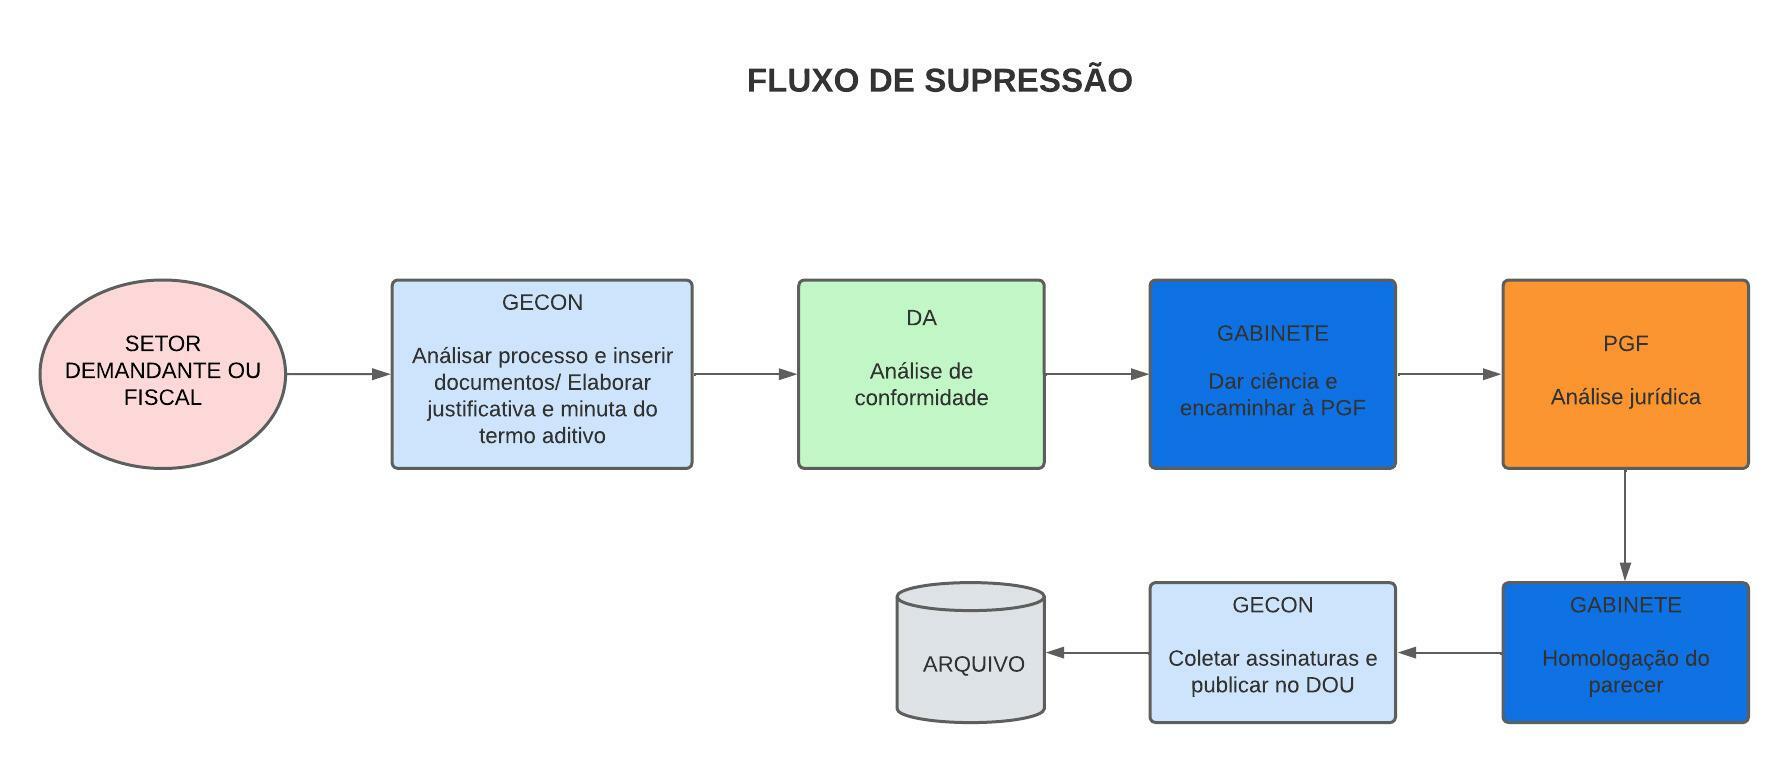 FLUXO DE SUPRESSÃO CONTRATUAL